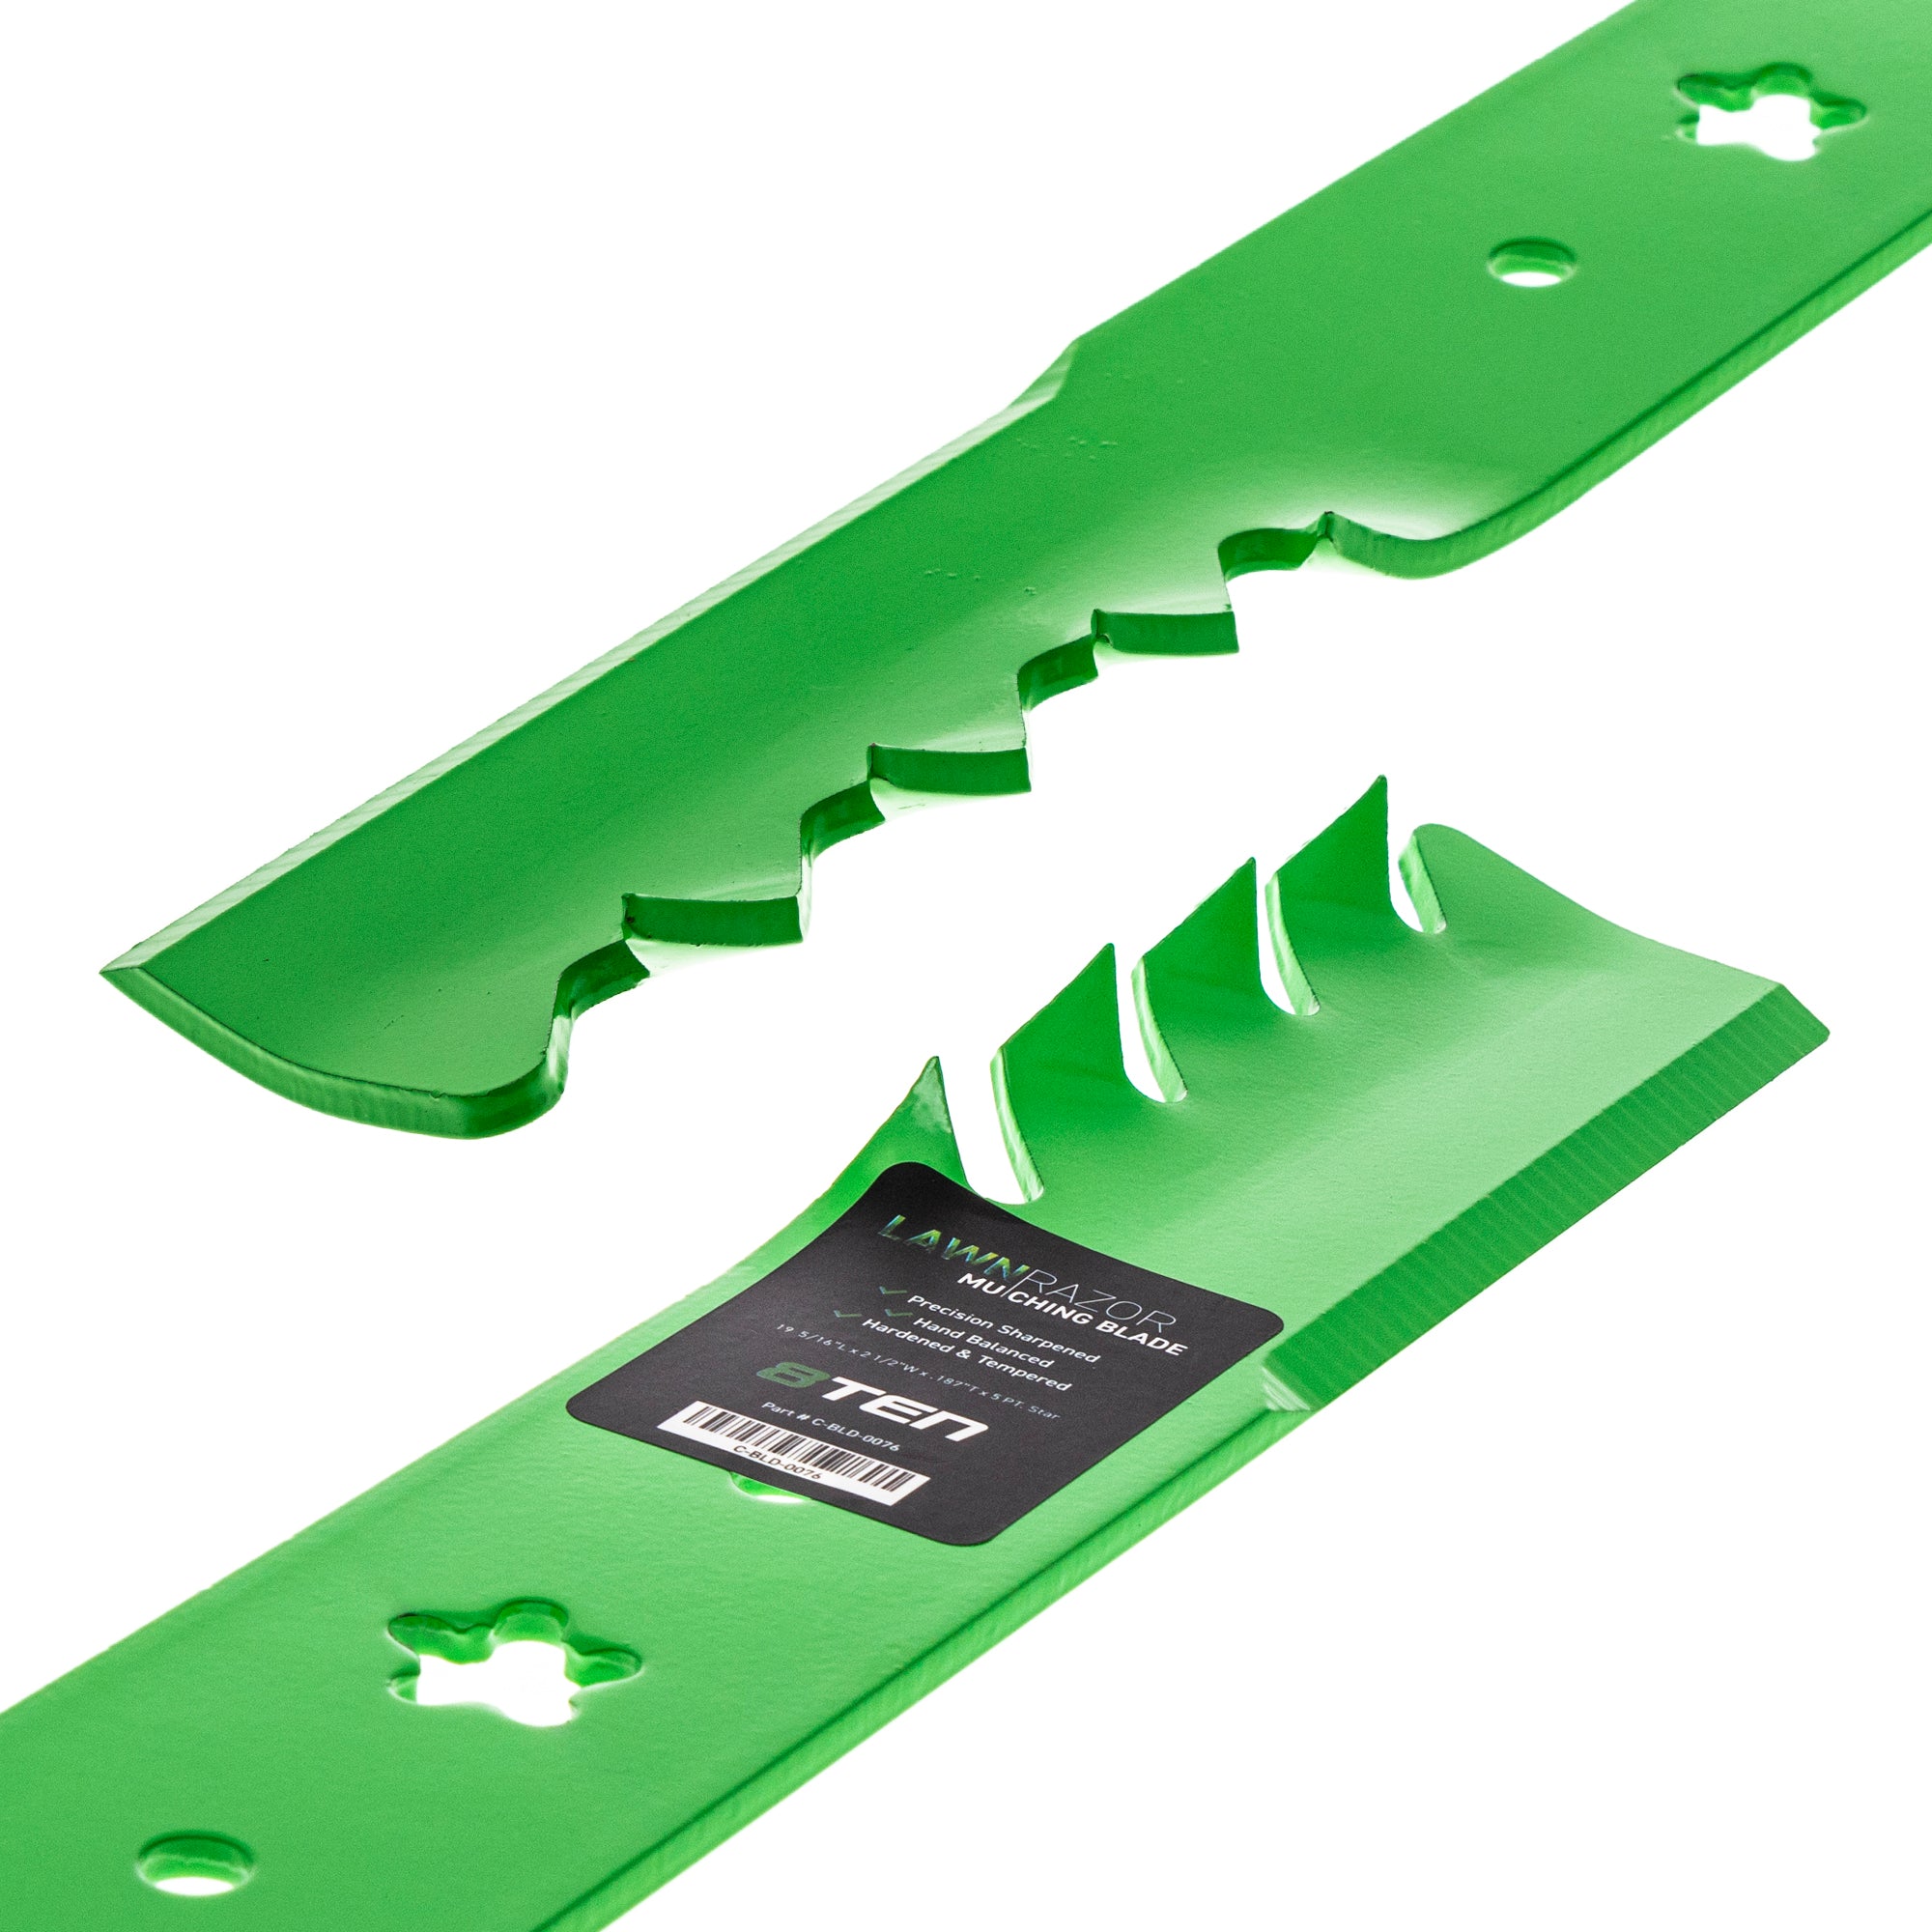 Deck Spindles & Mulching Blades Kit For AYP Weed Eater Poulan MK1002230